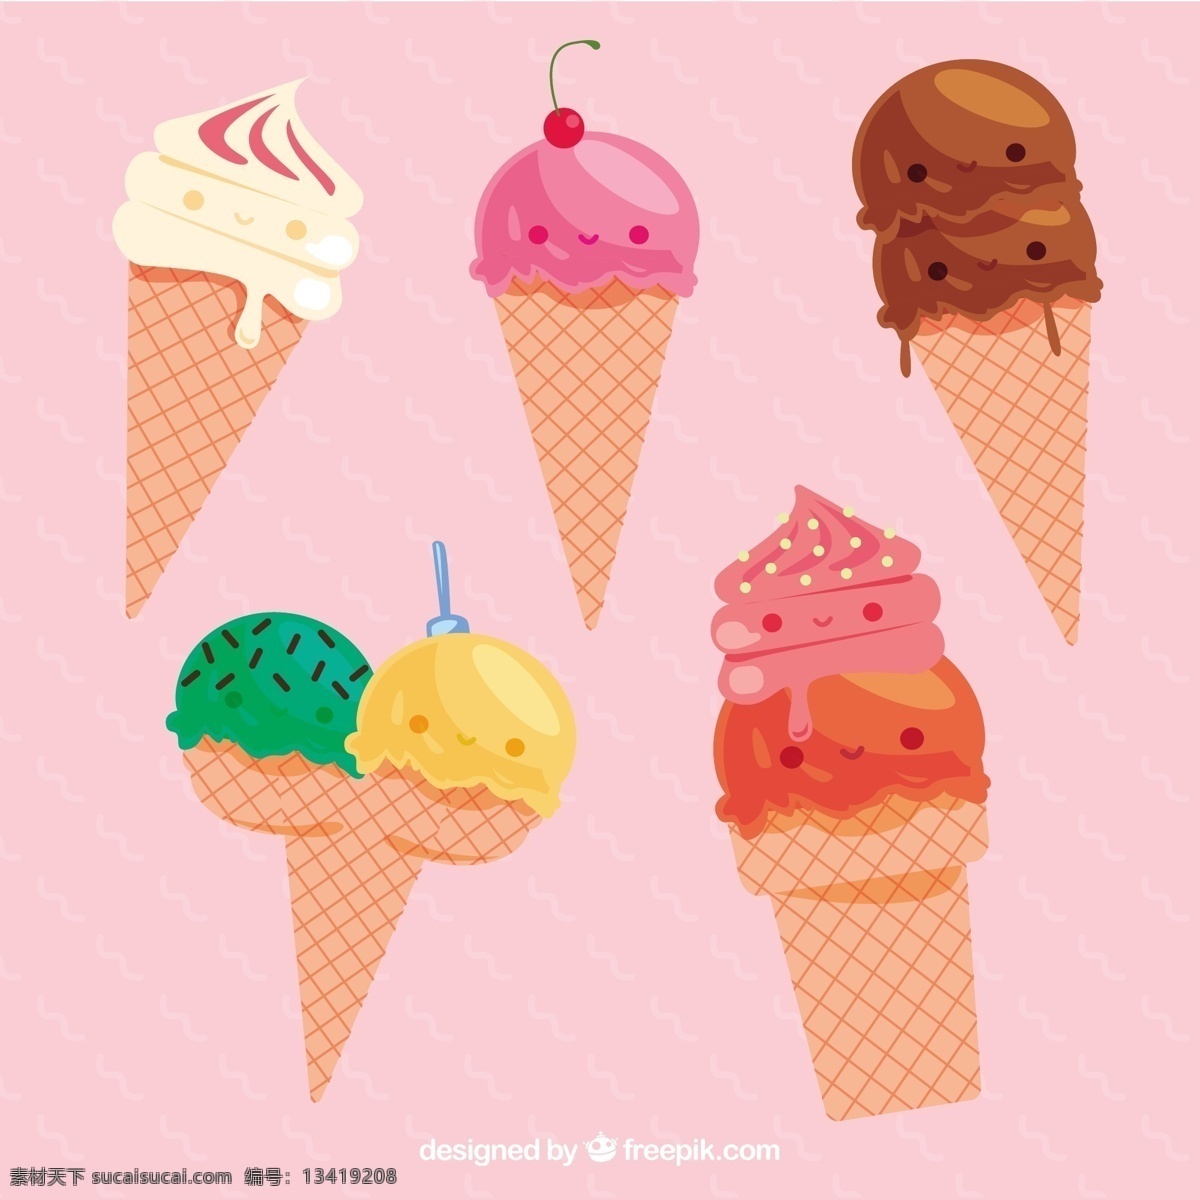 五 冰淇淋 锥 字符 包 食品 夏季 性格 可爱 颜色 平板 冰 甜 平面设计 有趣 甜点 奶油 吃 季节 包装